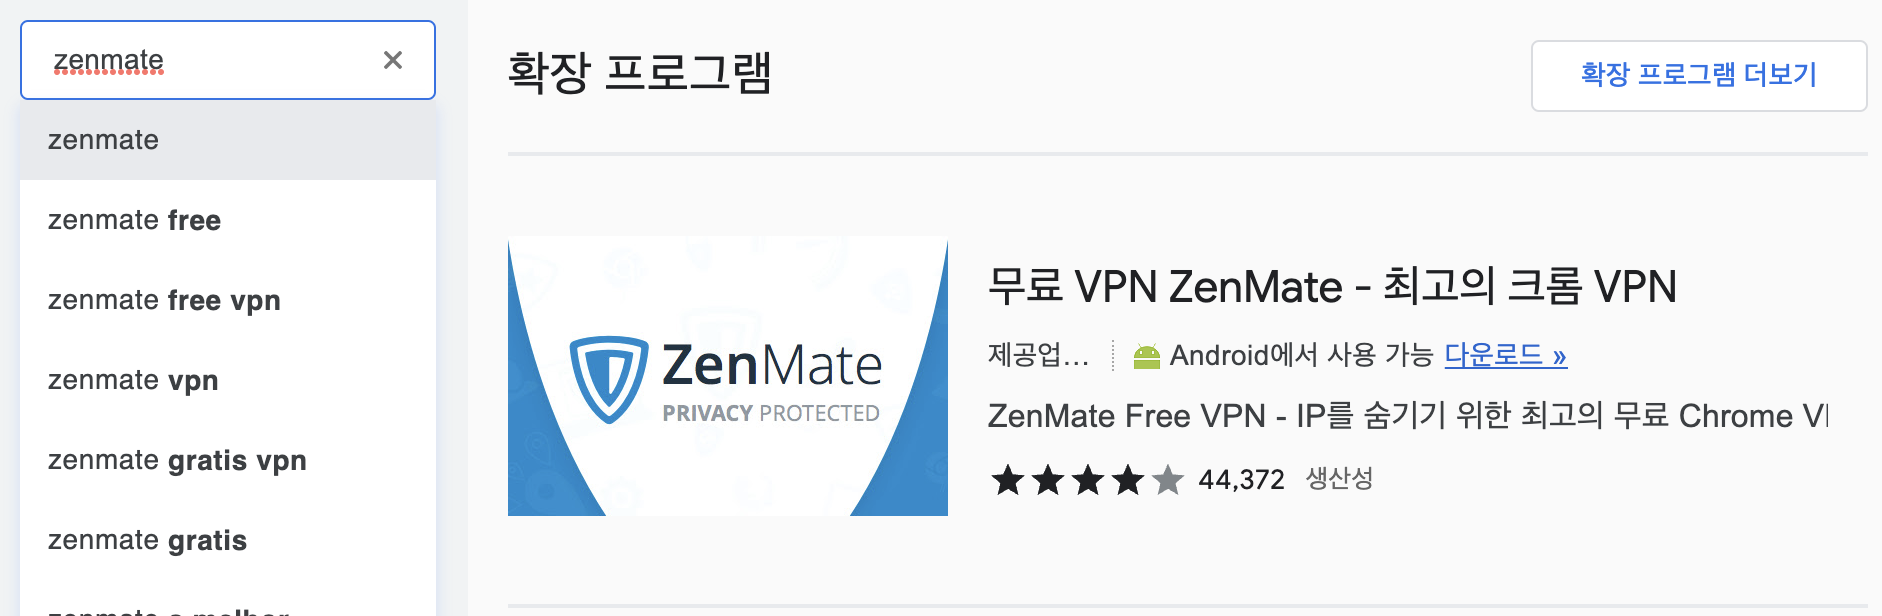 블리자드 계정 2개 만들기 VPN